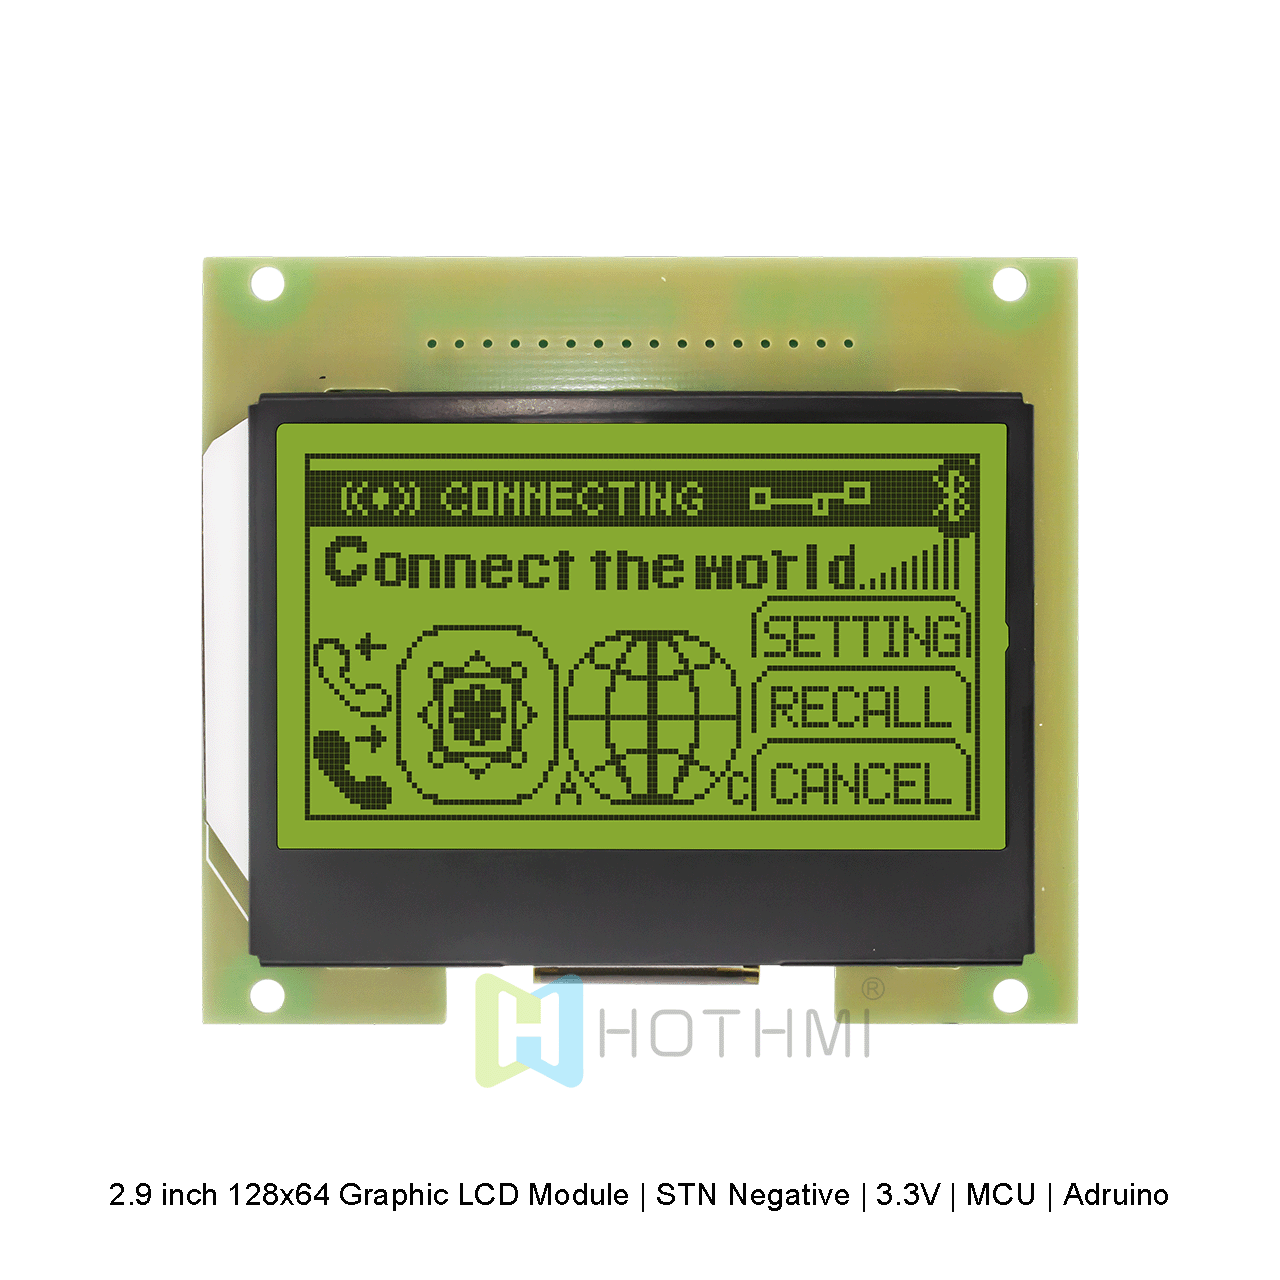 2.9 inch 128x64 Graphic LCD Module | STN Negative | 3.3V | MCU | Adruino